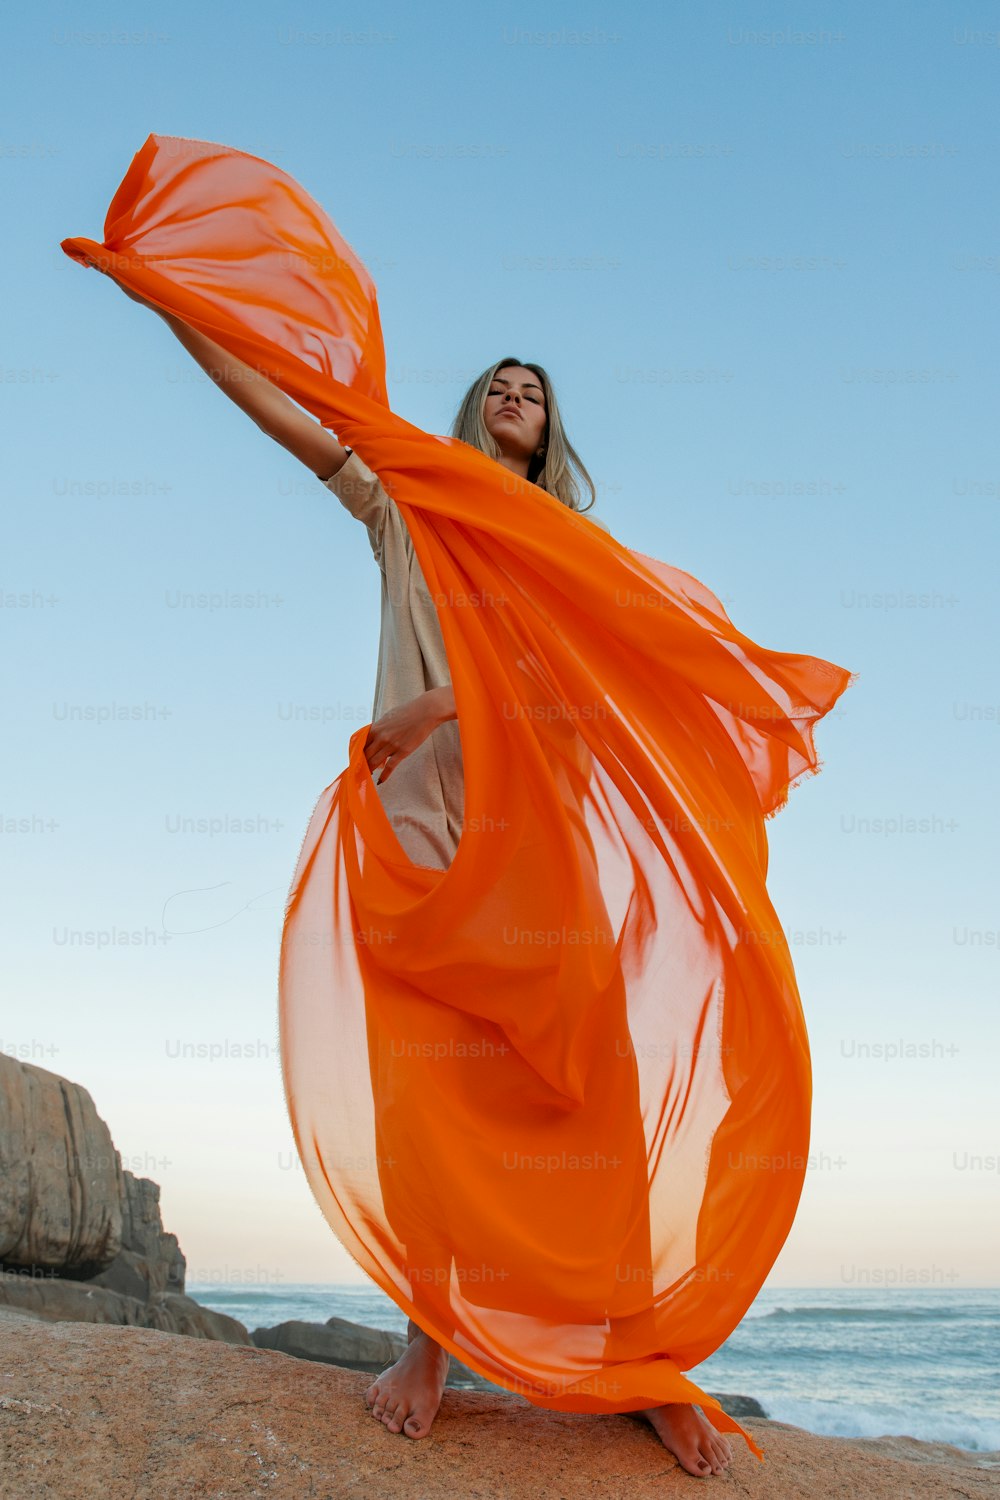 Una mujer con un vestido naranja parada en una playa